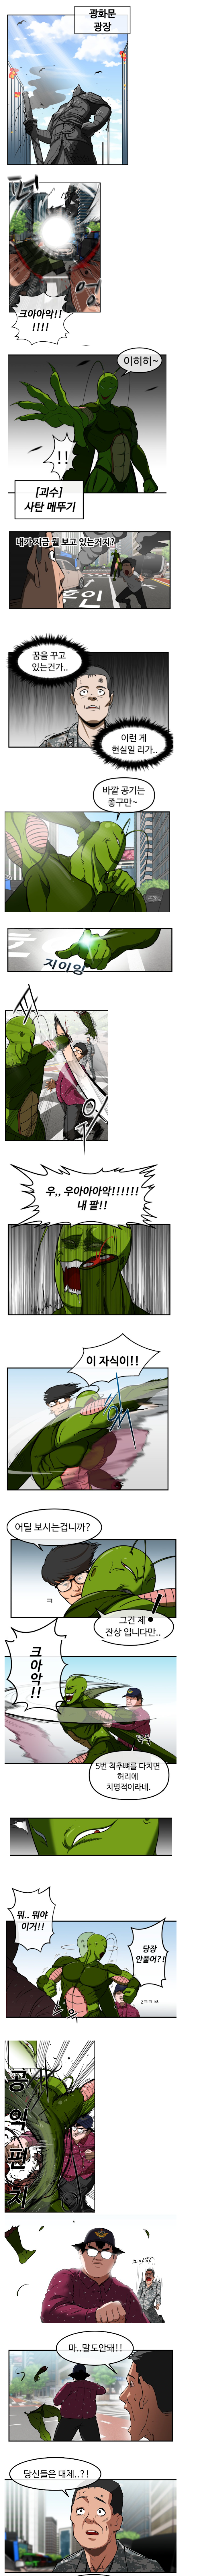 에이전트-K. 만화